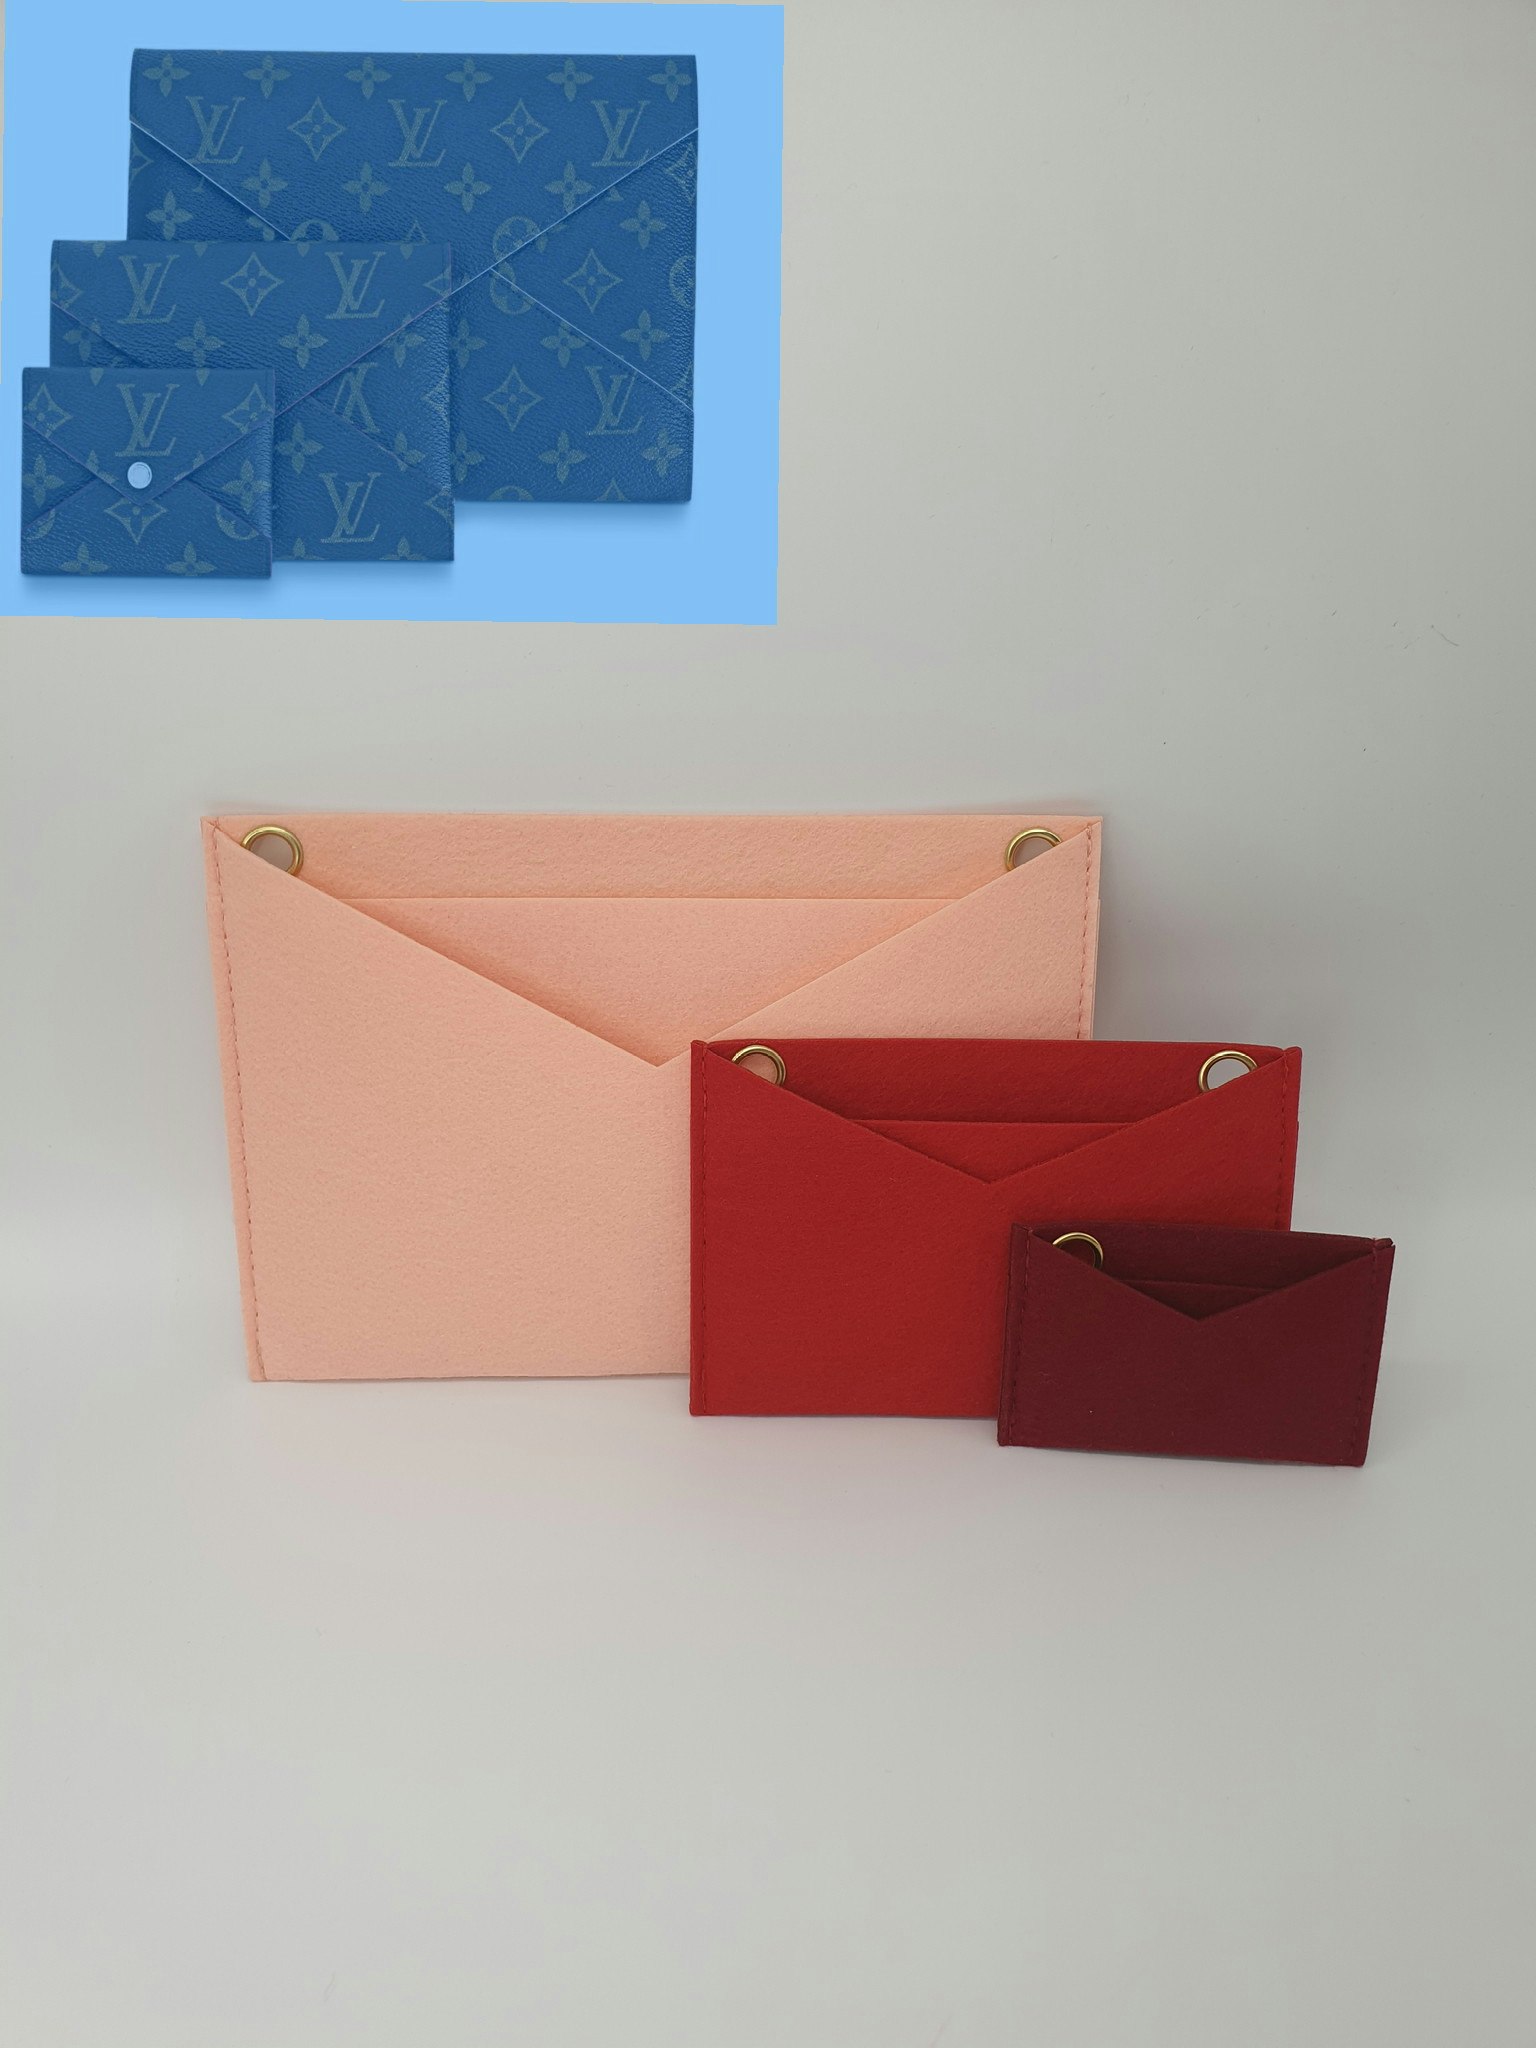 Kirigami Pochette Envelope Bag Organizer Insert Set L V -  Israel